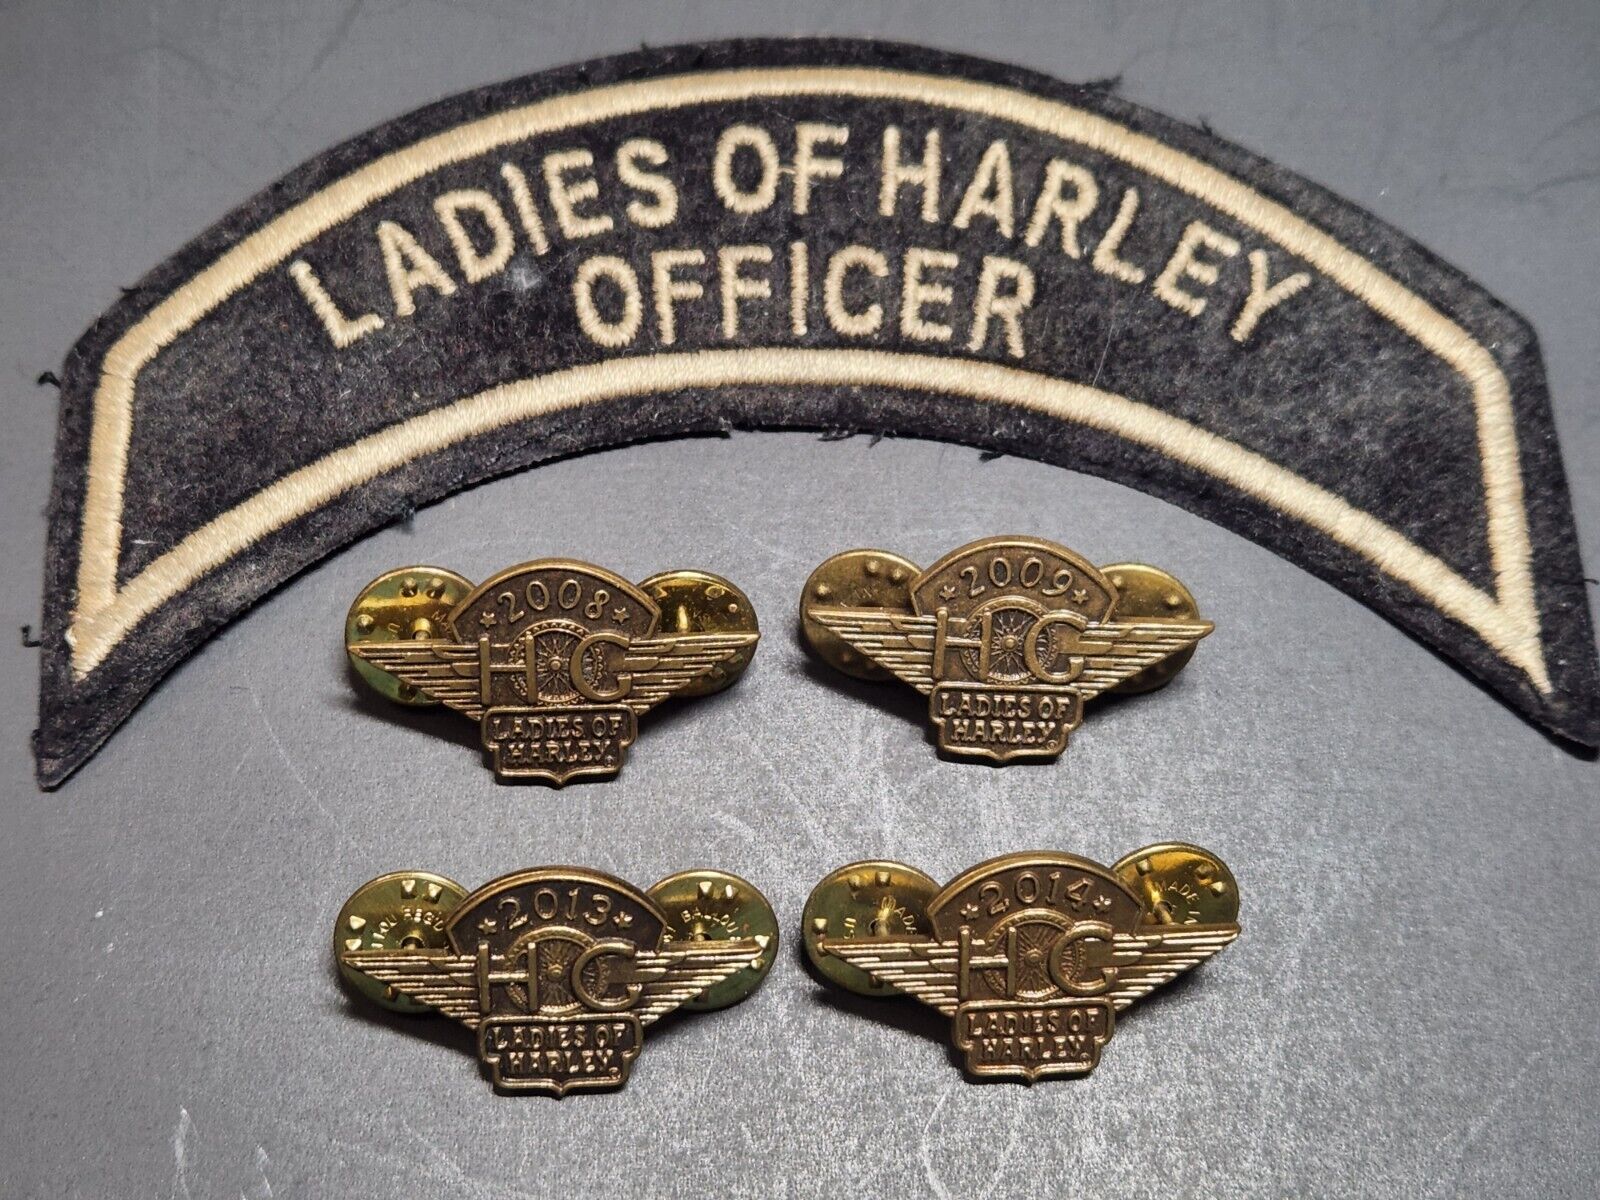 Ladies of Harley HOG Pins 2008, 2009, 2013 & 2014 and Officer Patch UNUSED